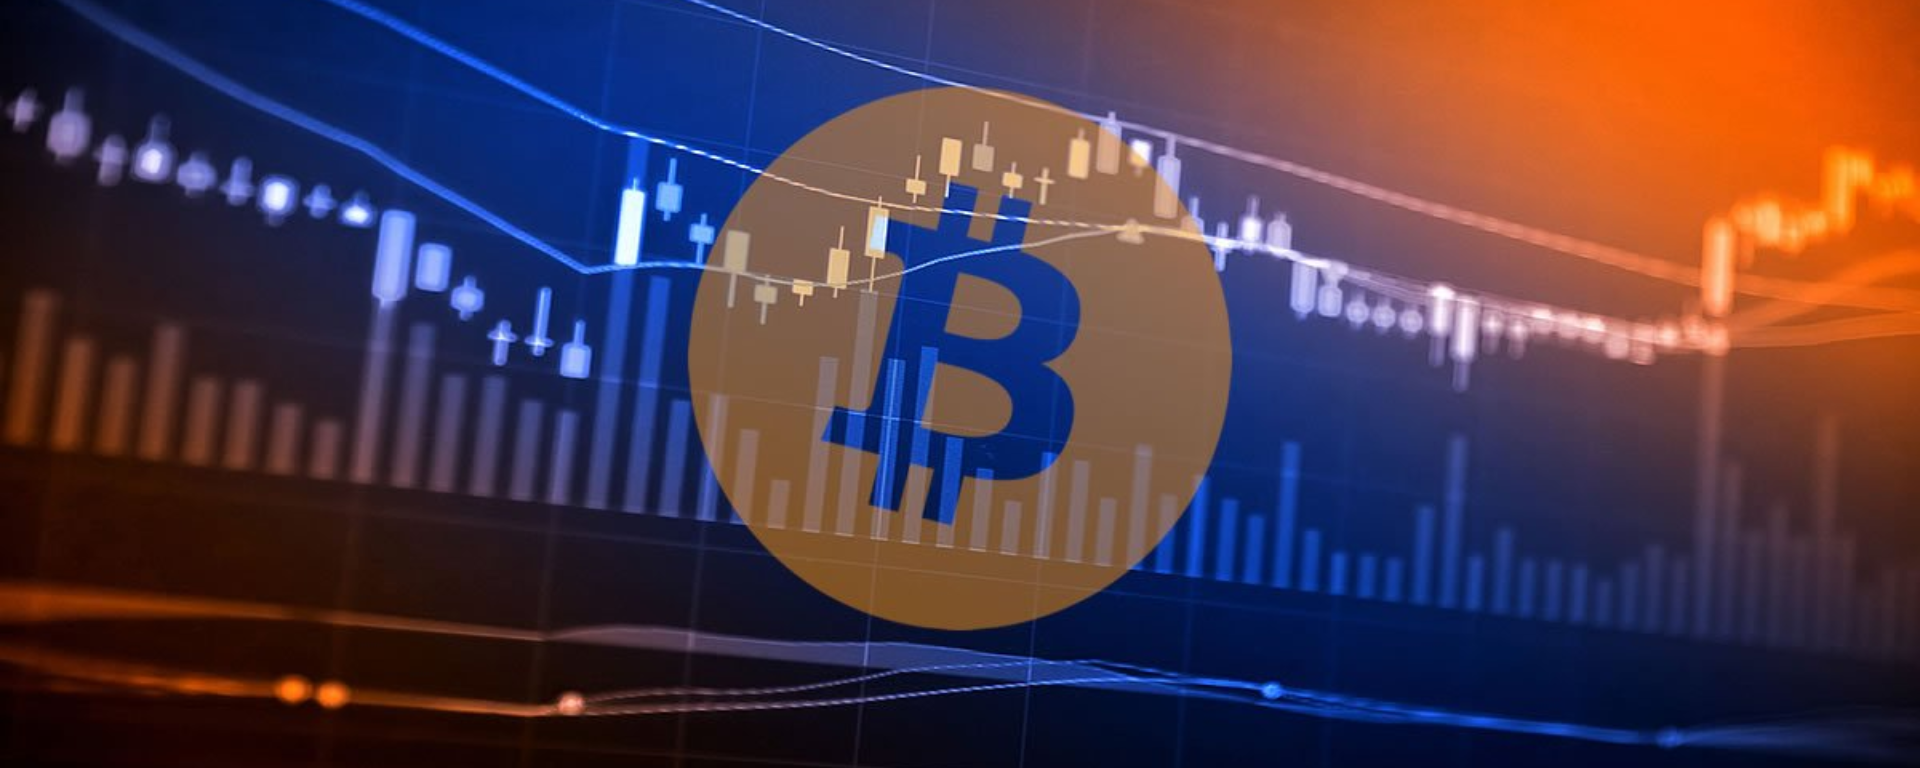 Bitcoin recua abaixo de US$ 23.000 após semana com ganhos significativos